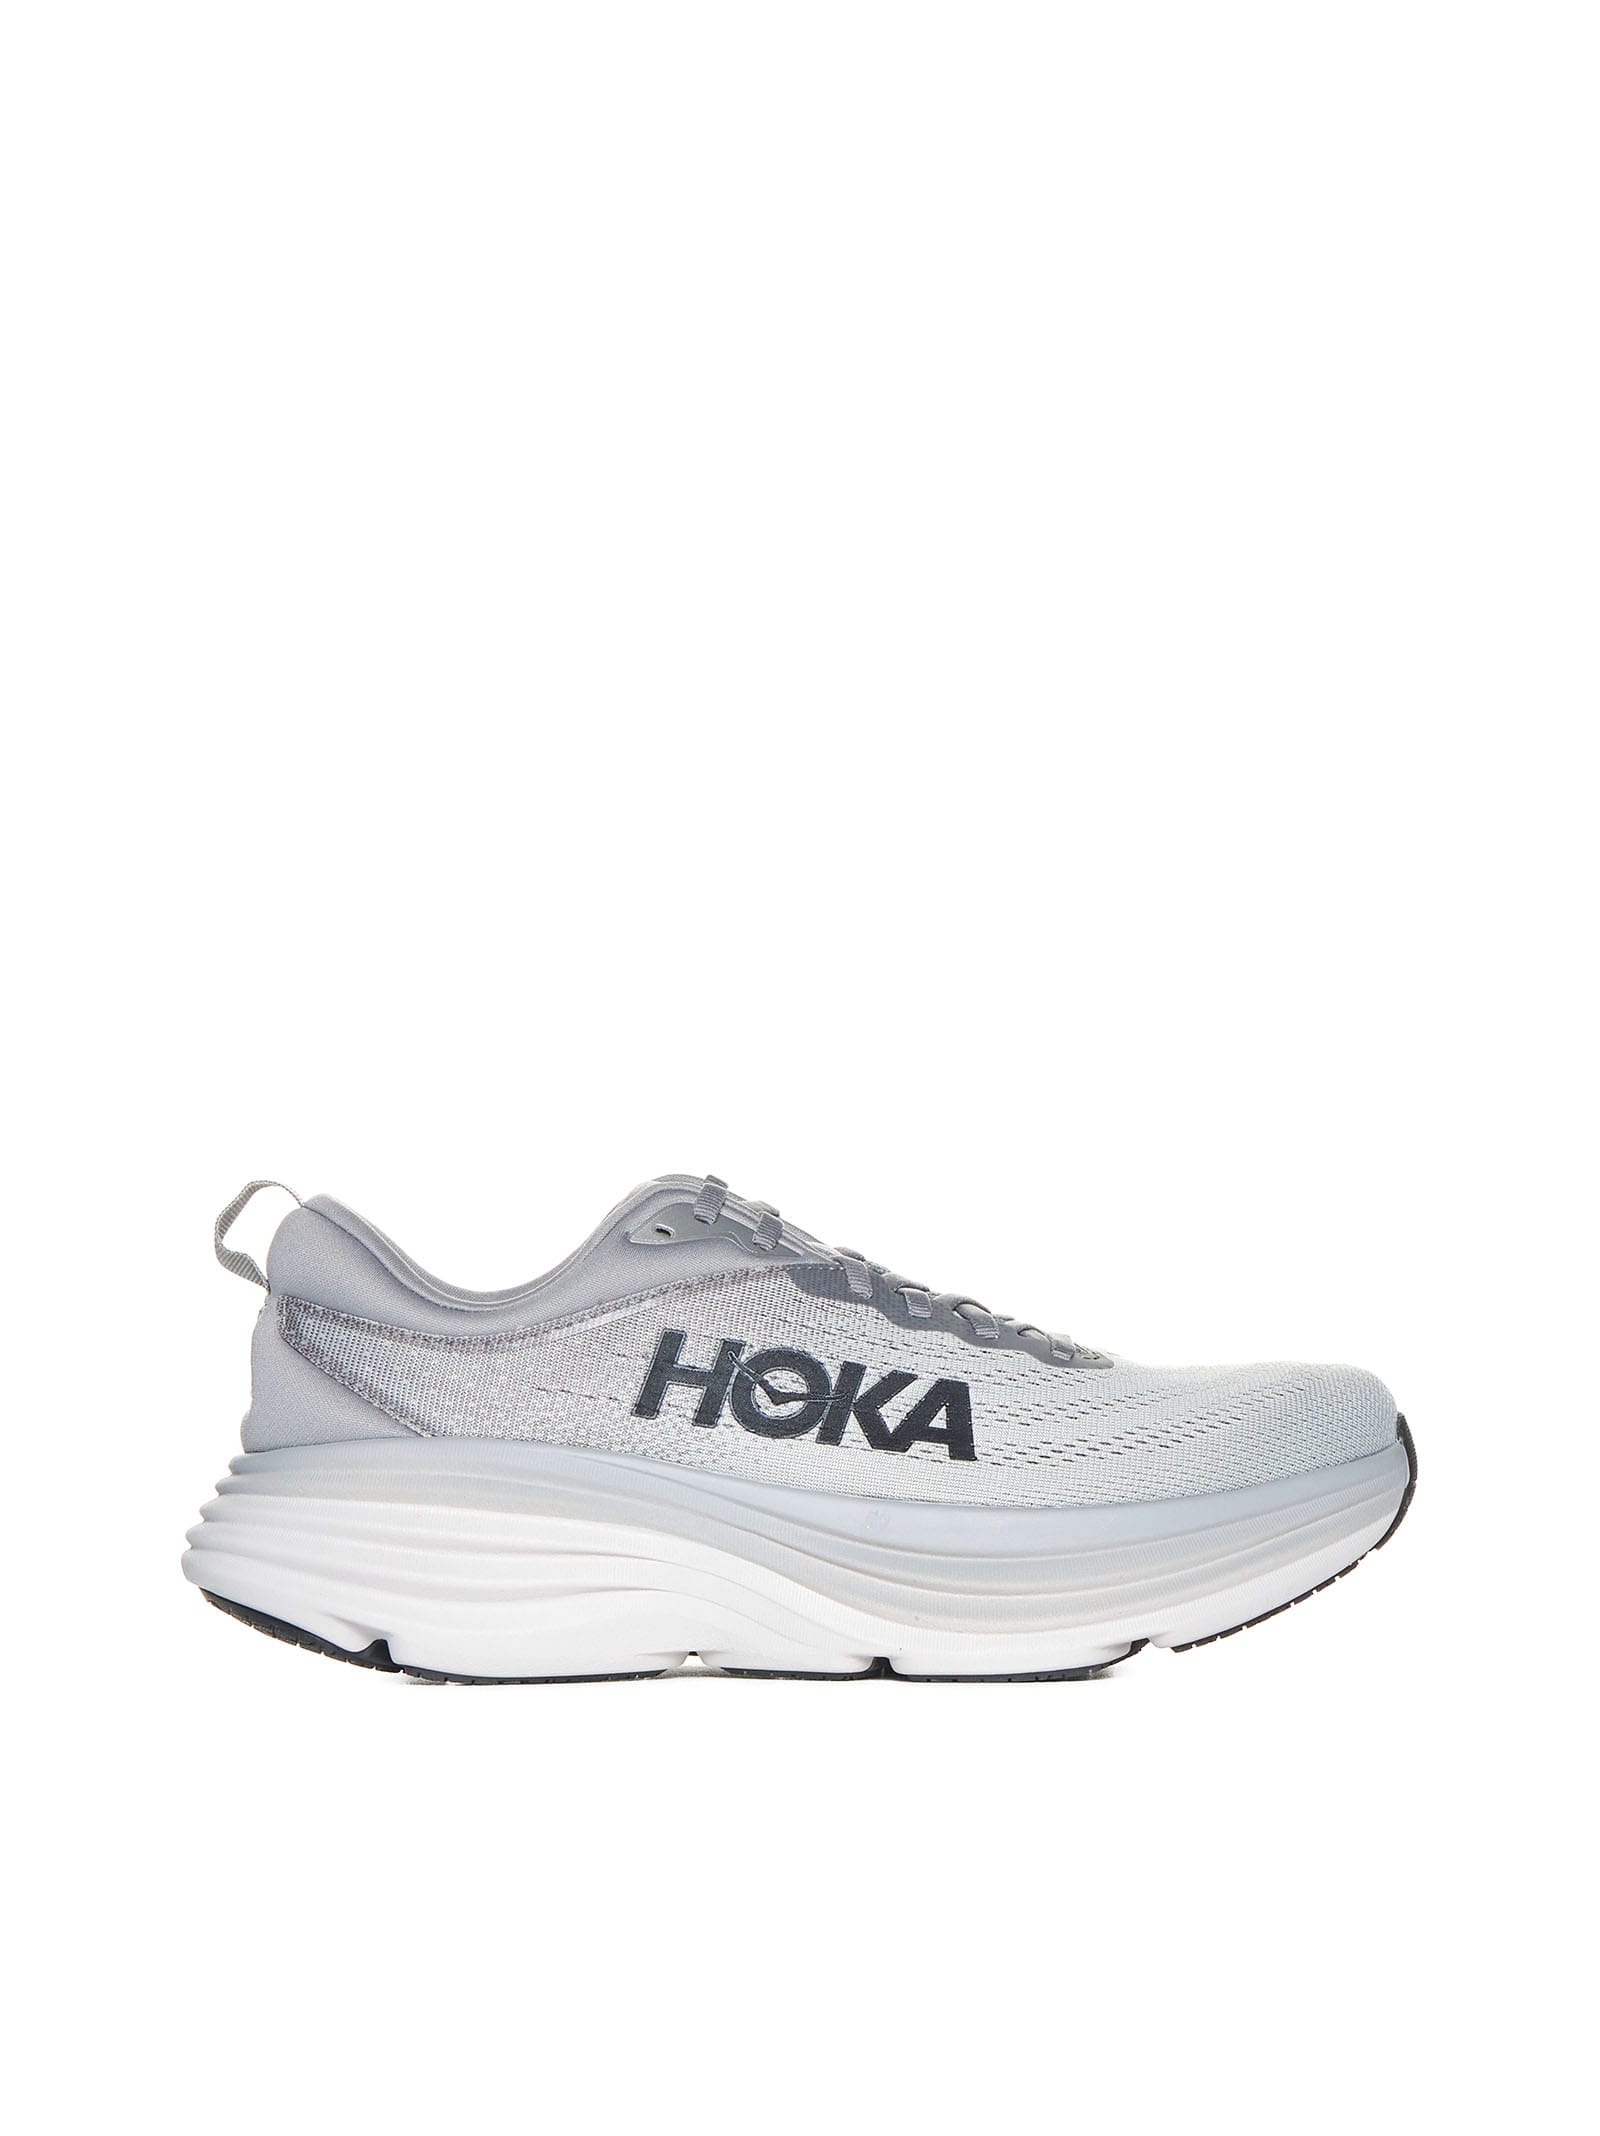 Hoka Sneakers